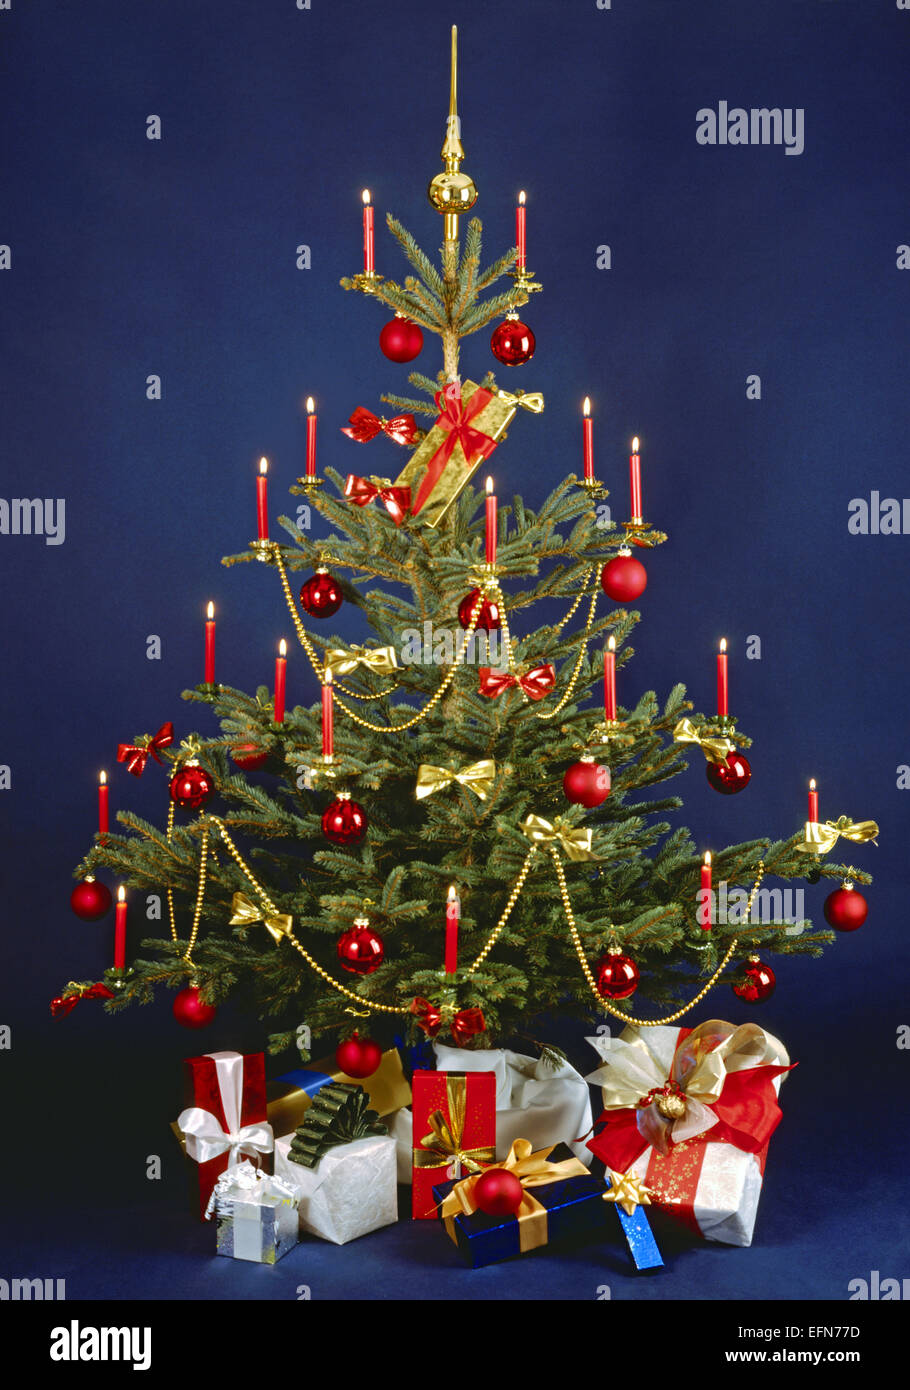 Weihnachtsbaum, geschmueckt, Geschenke, Stillleben, Weihnachten, Christbaum, Kerzen, Christbaumschmuck, Christbaumkugeln, Kugeln Banque D'Images